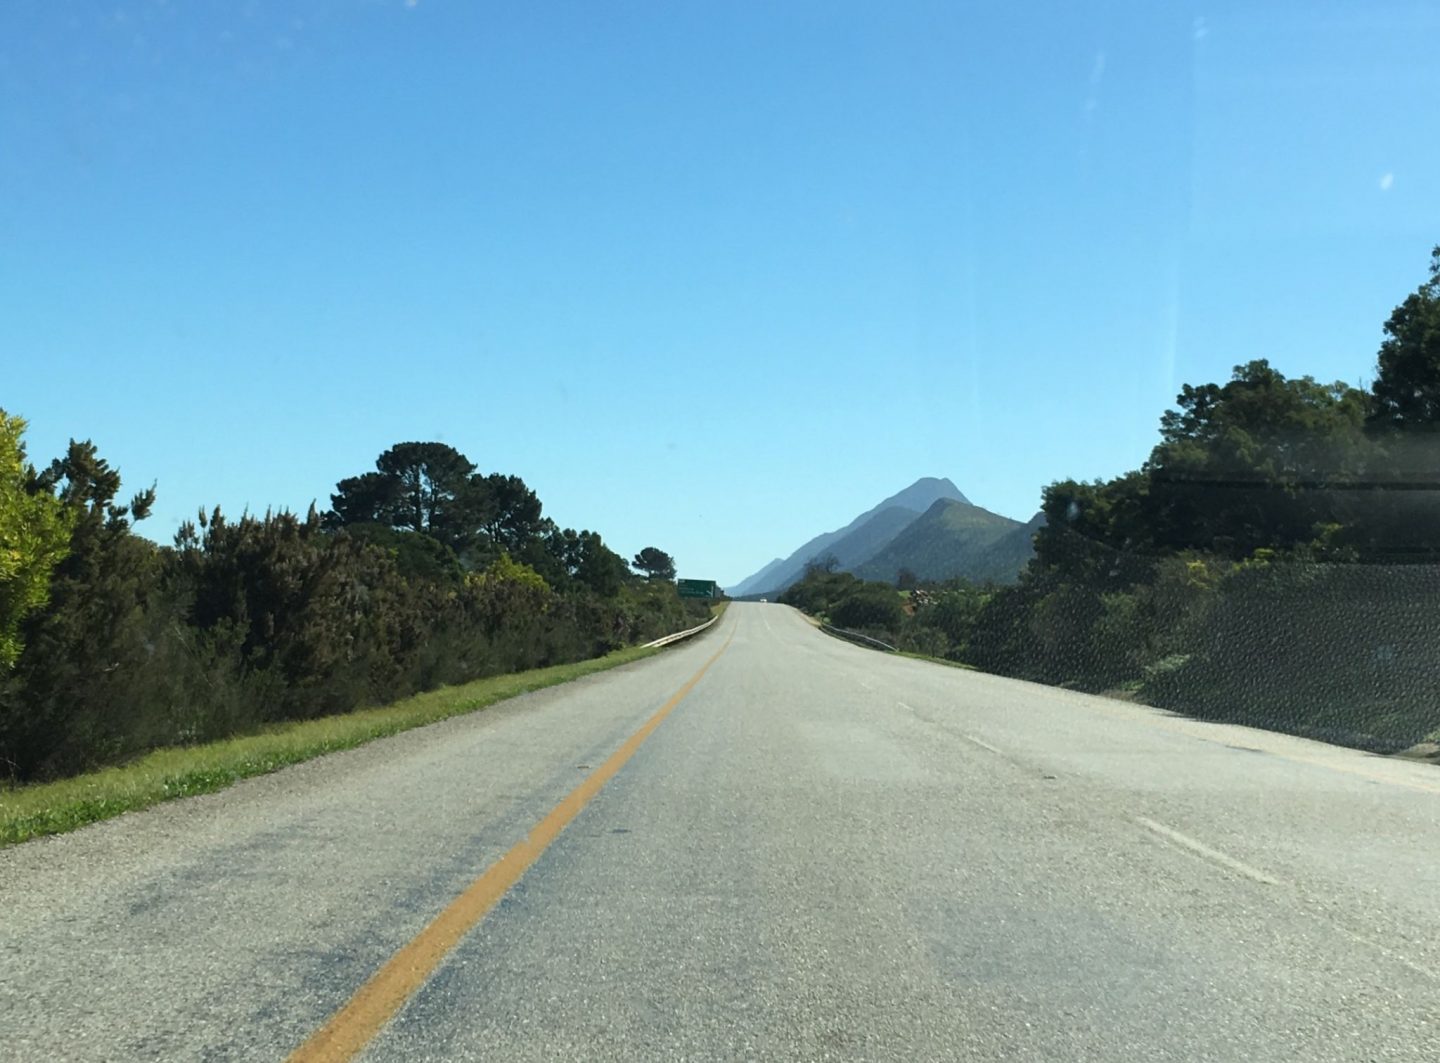 Garden-Route-South-Africa